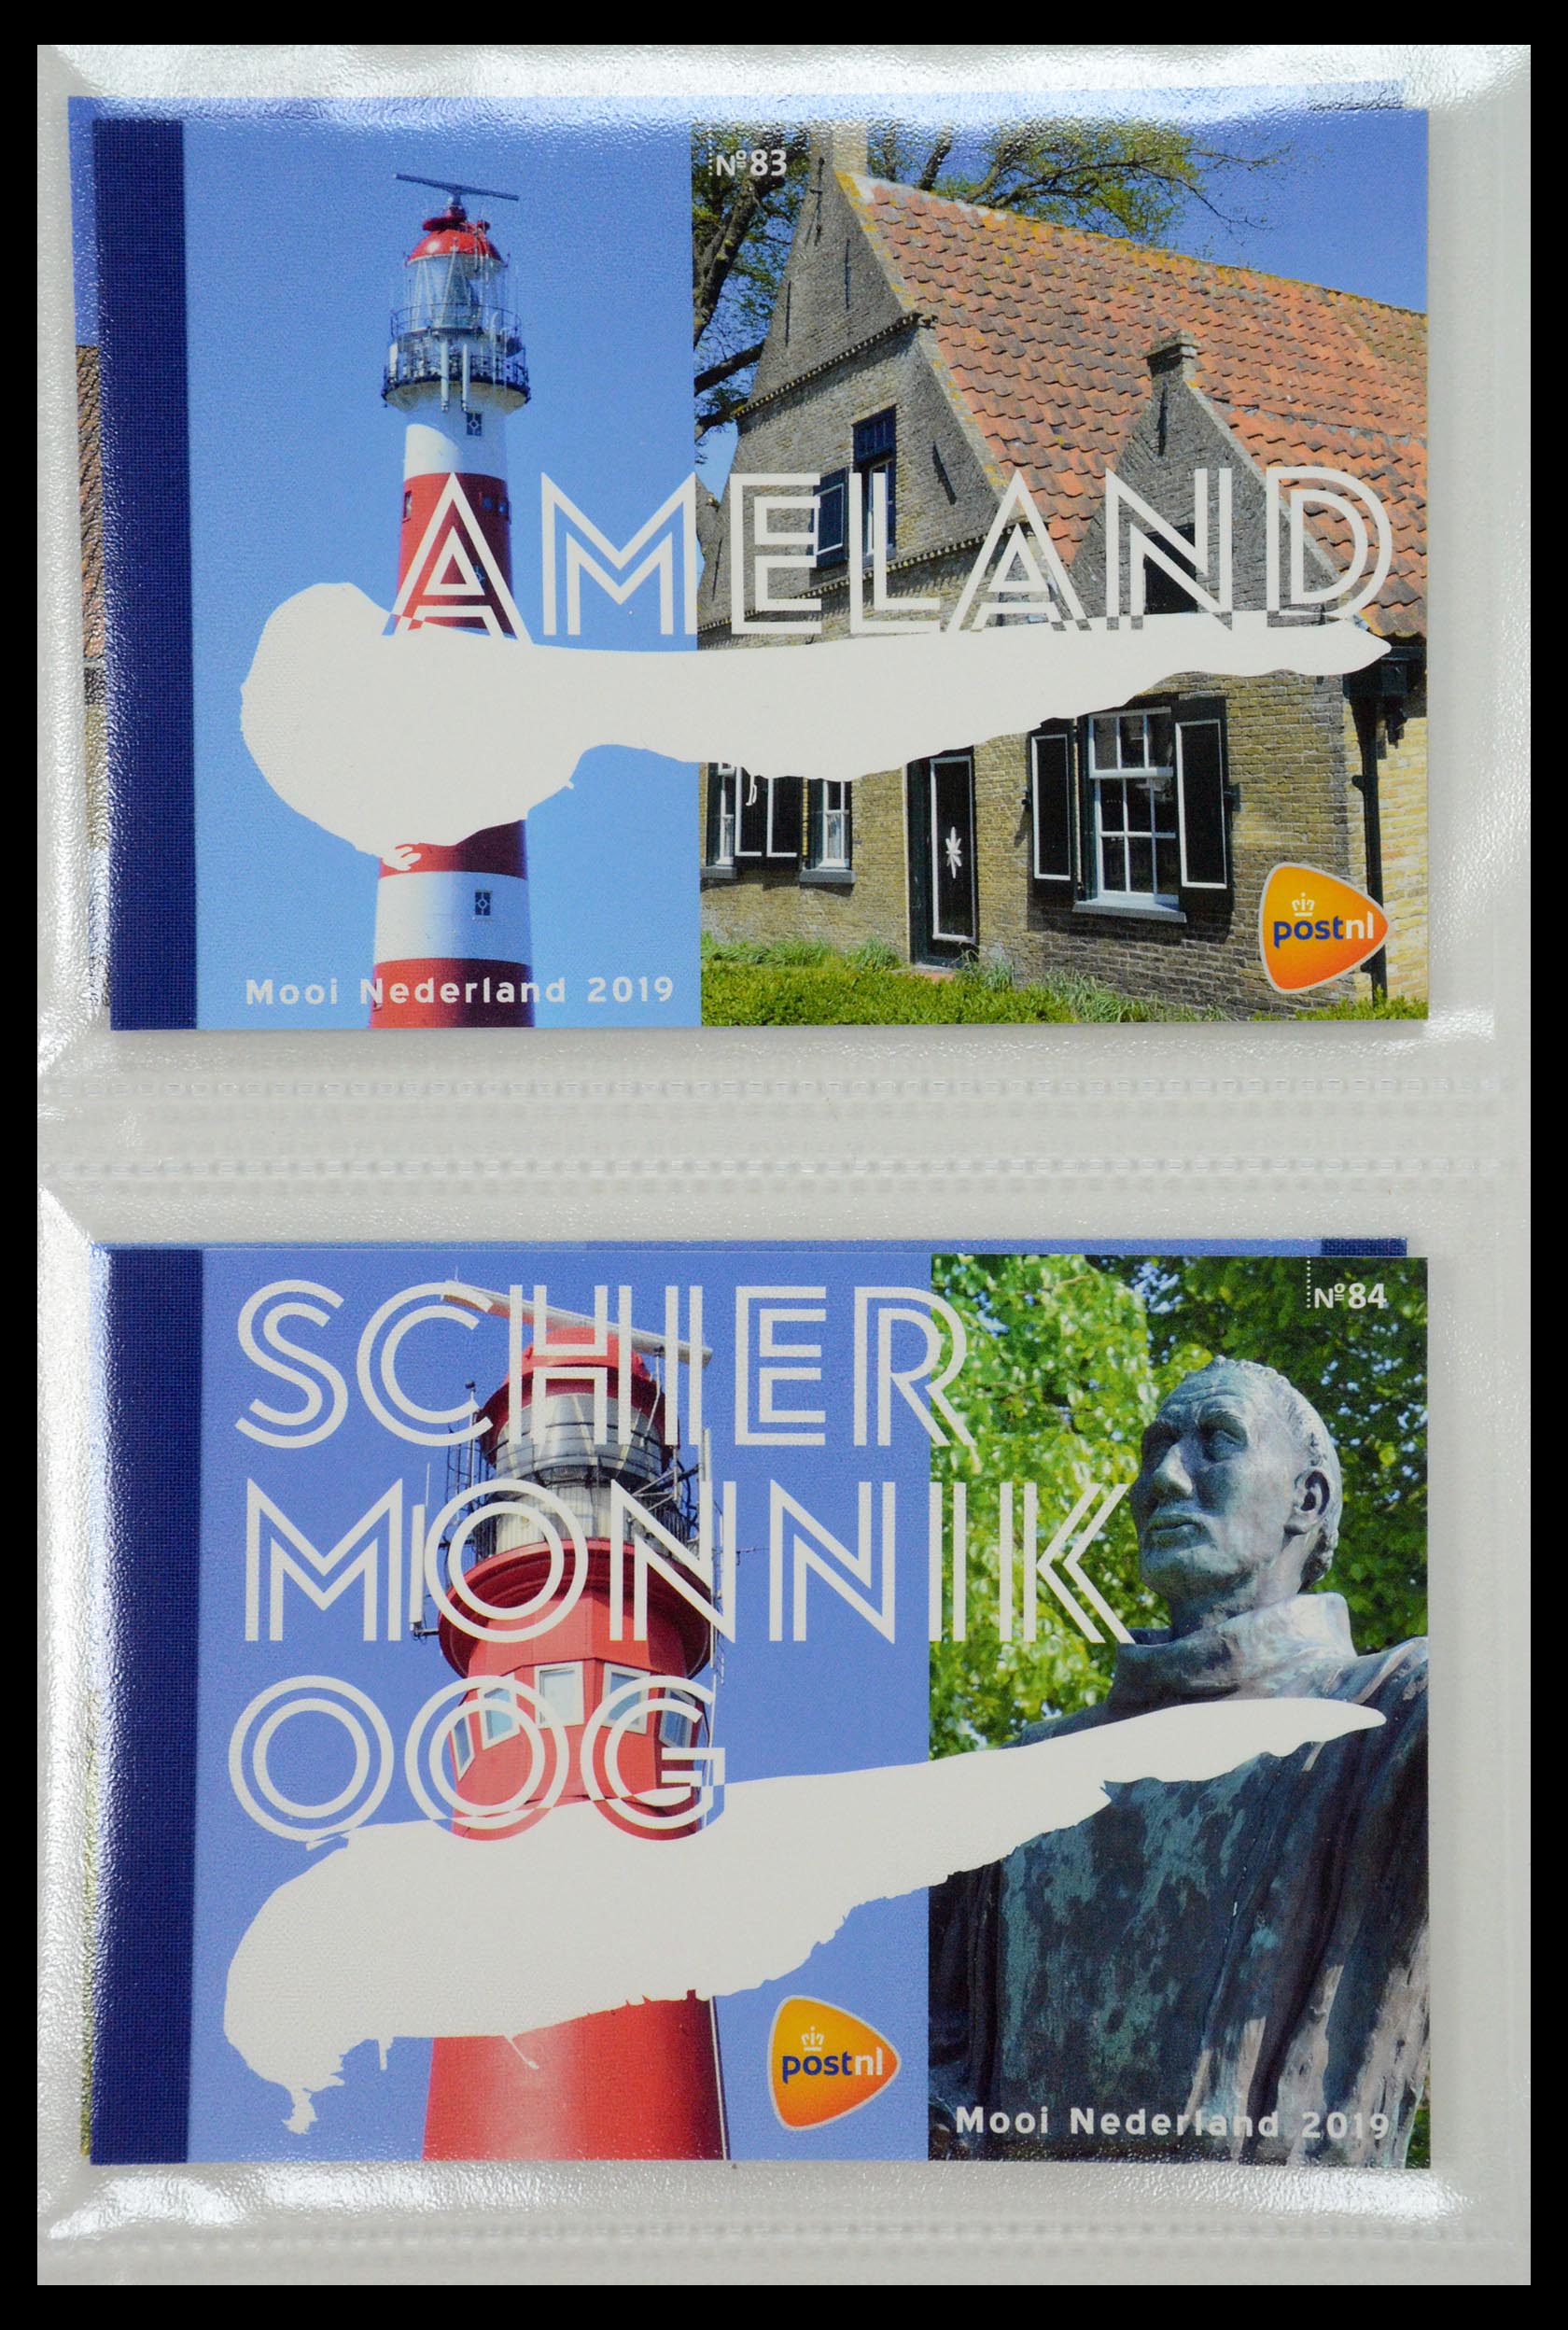 35148 042 - Stamp Collection 35148 Netherlands prestige booklets 2003-2019.